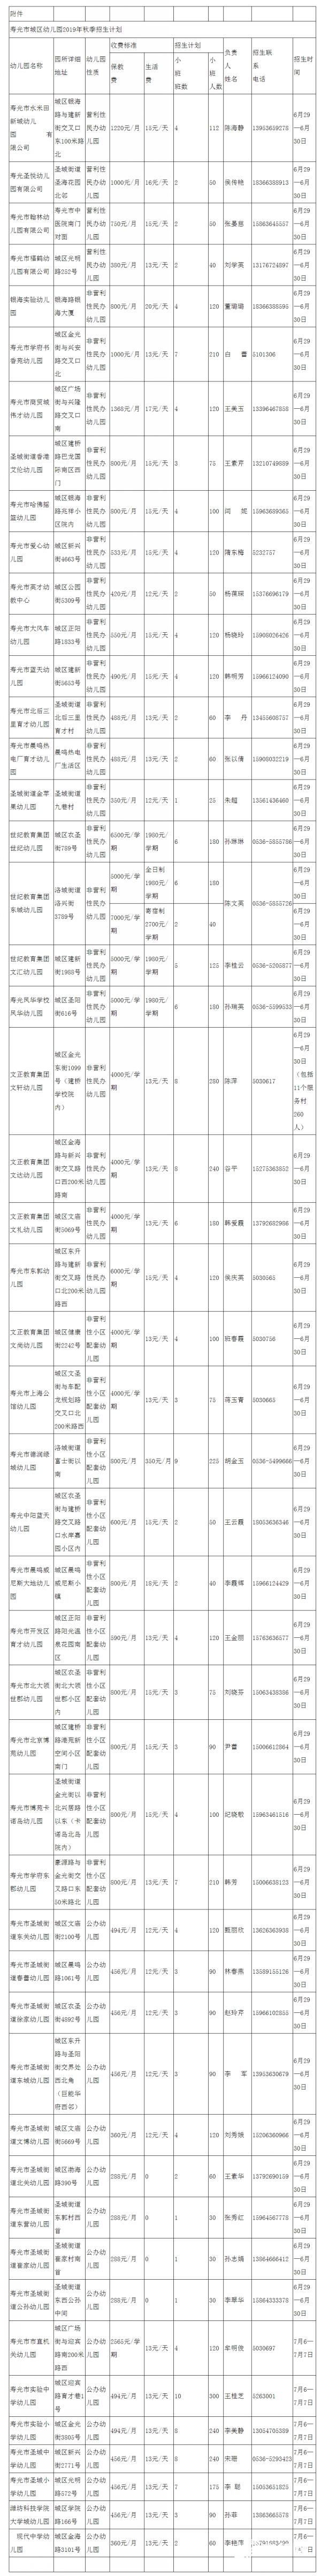 寿光市城区幼儿园2019年秋季招生公告-寿光市教育和体育局_conew1.jpg